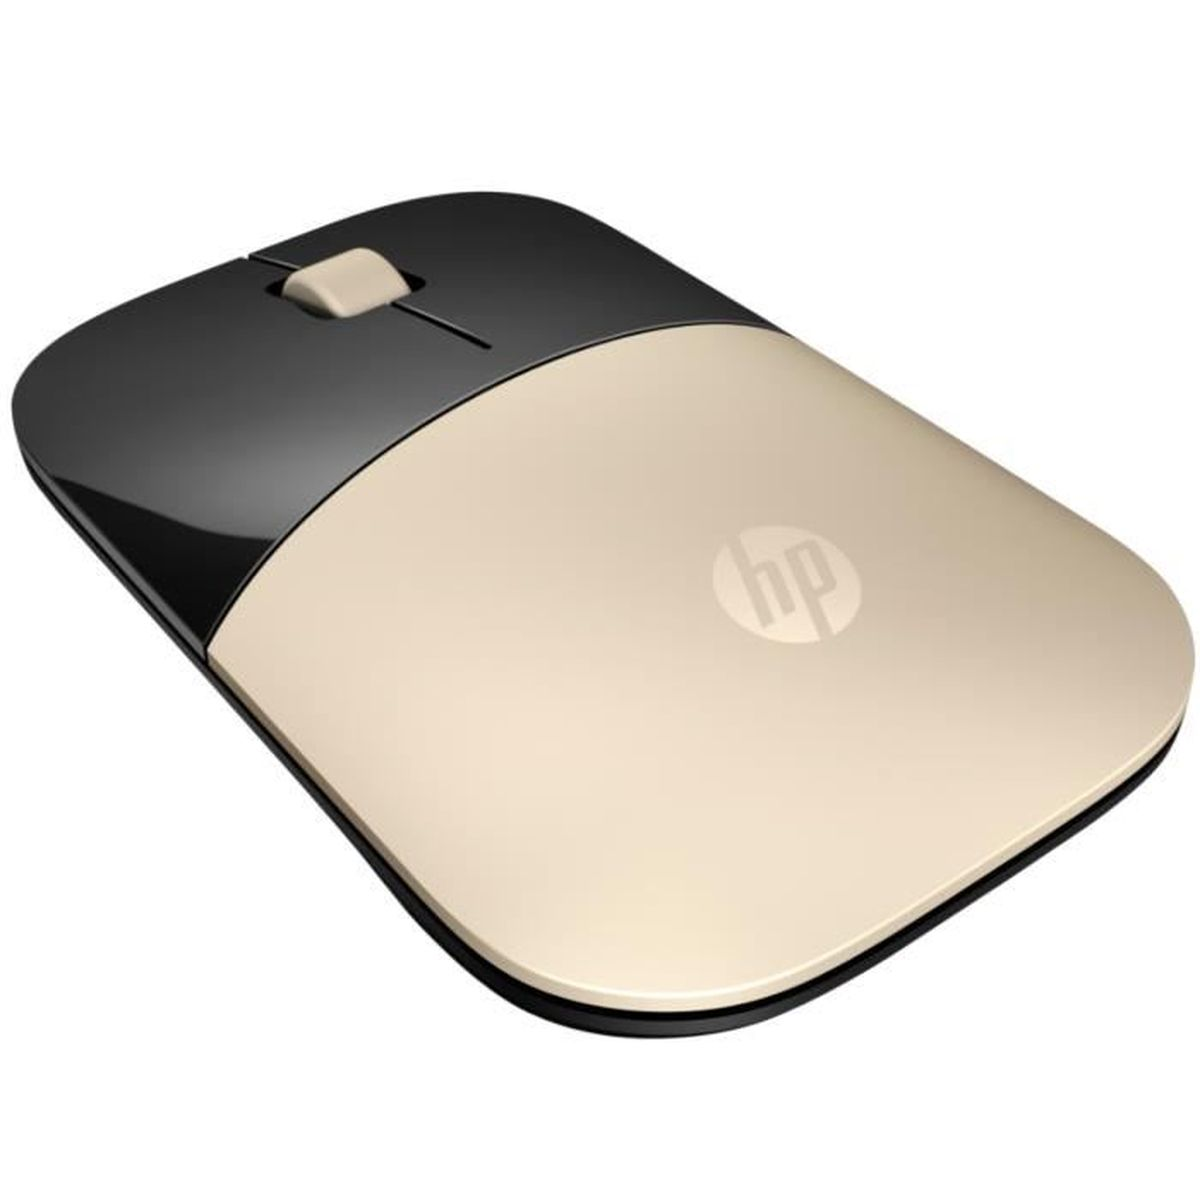 HP X7Q43AA Gold Maus,